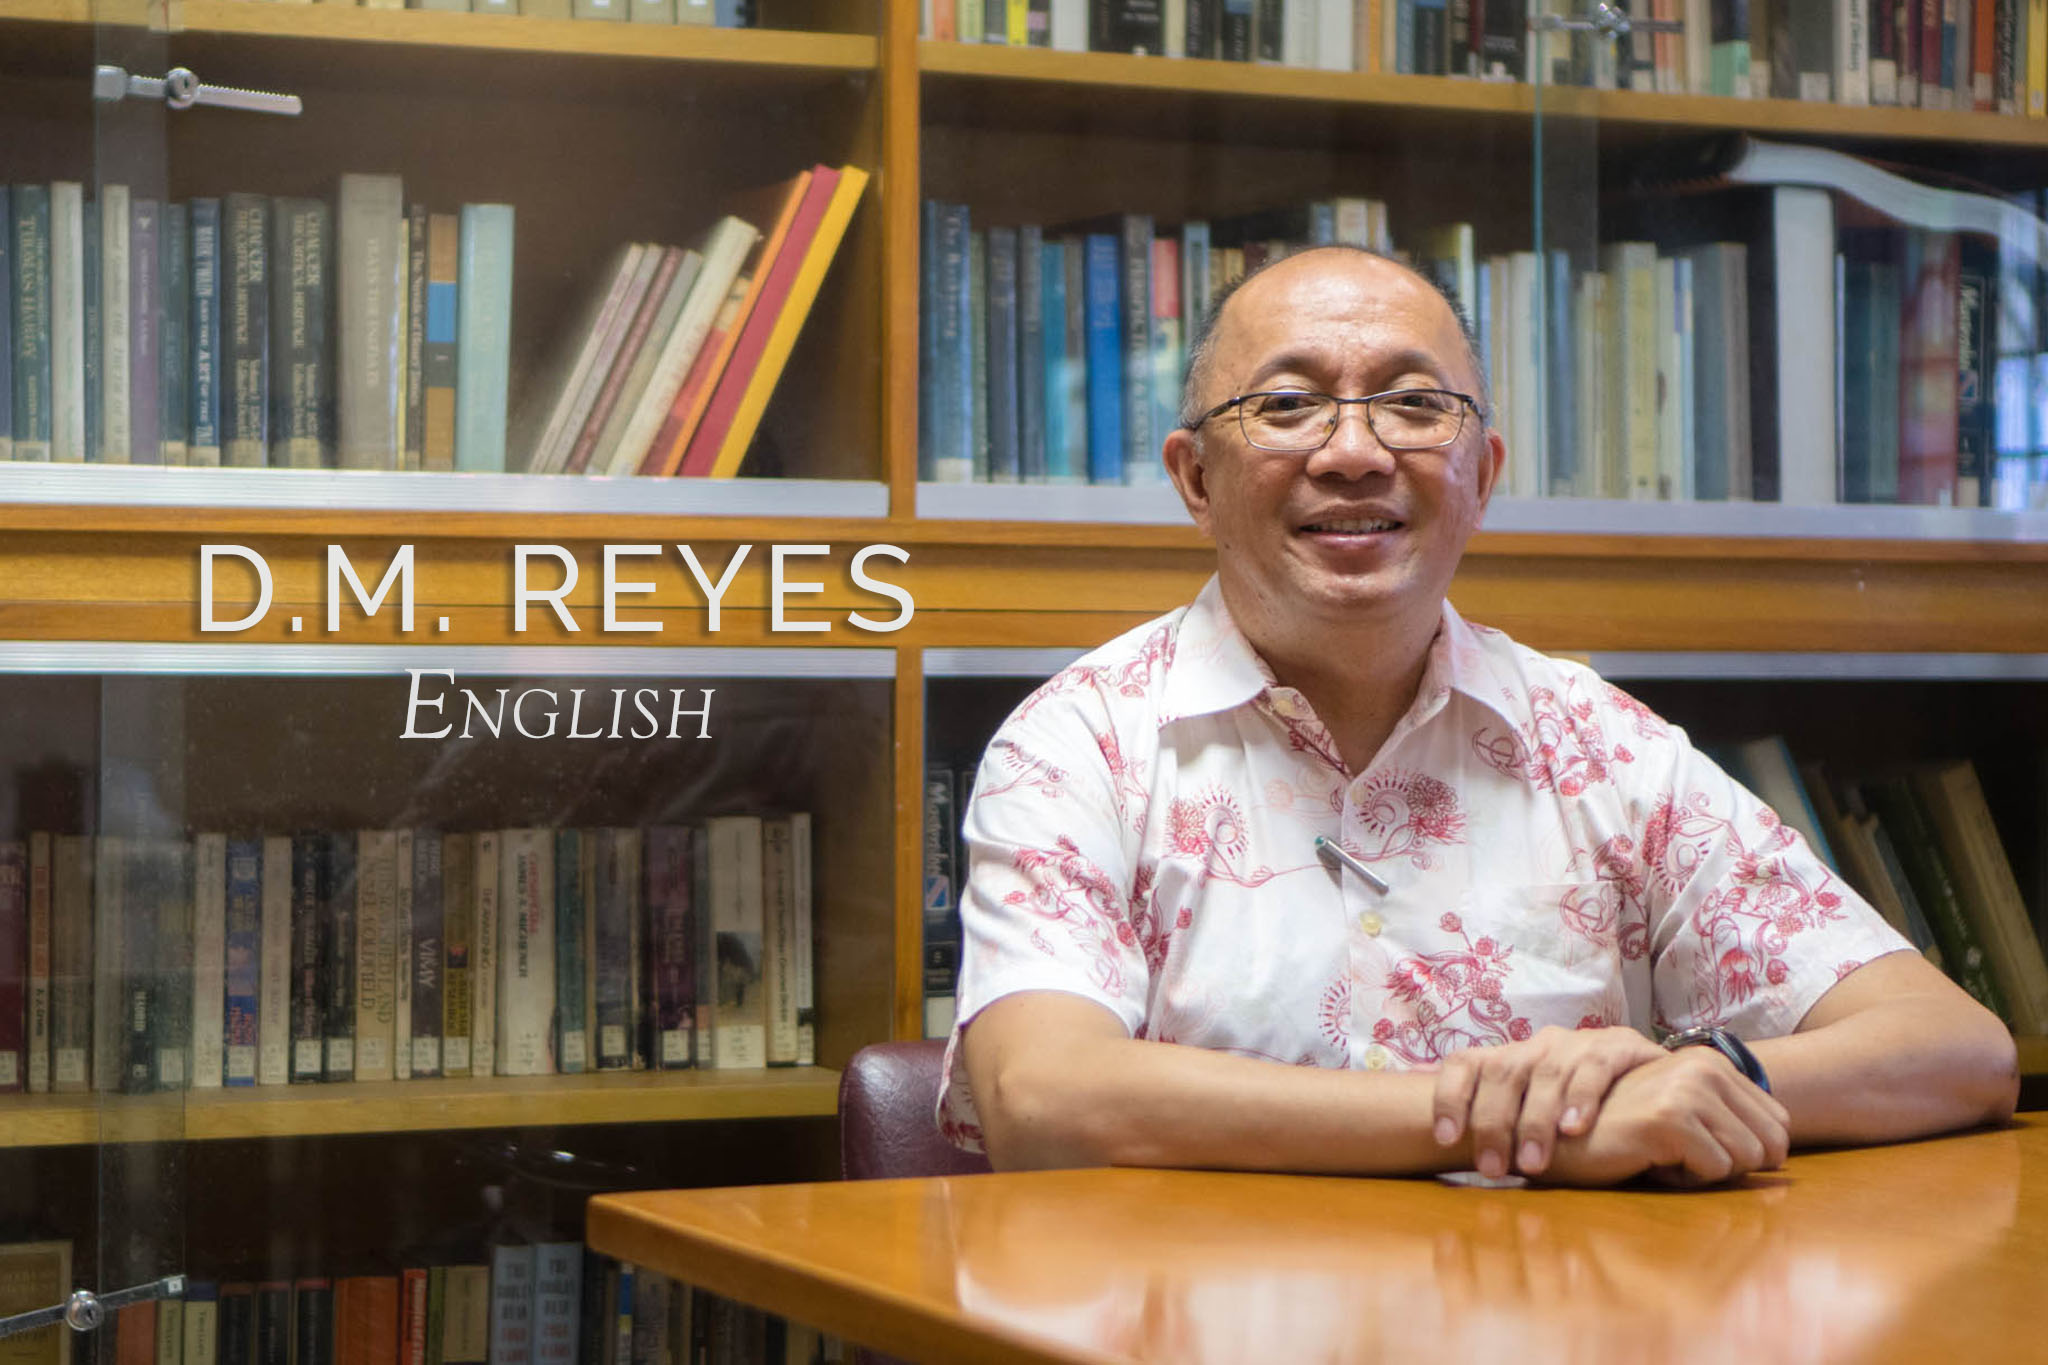 D.M. Reyes: Until Always